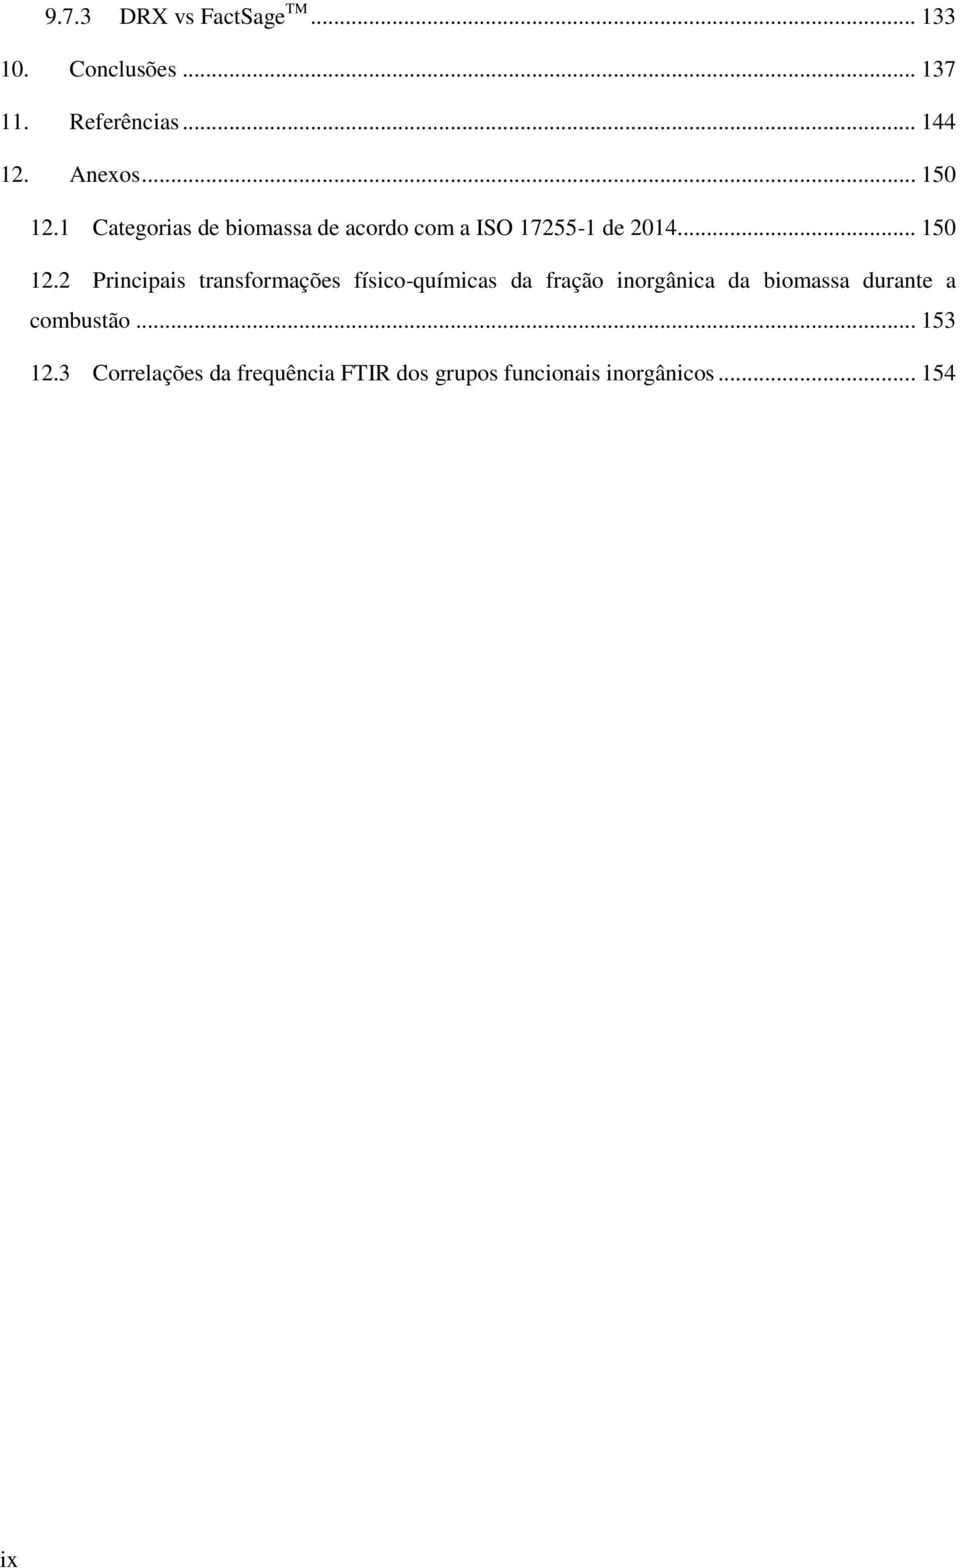 1 Categorias de biomassa de acordo com a ISO 17255-1 de 2014.